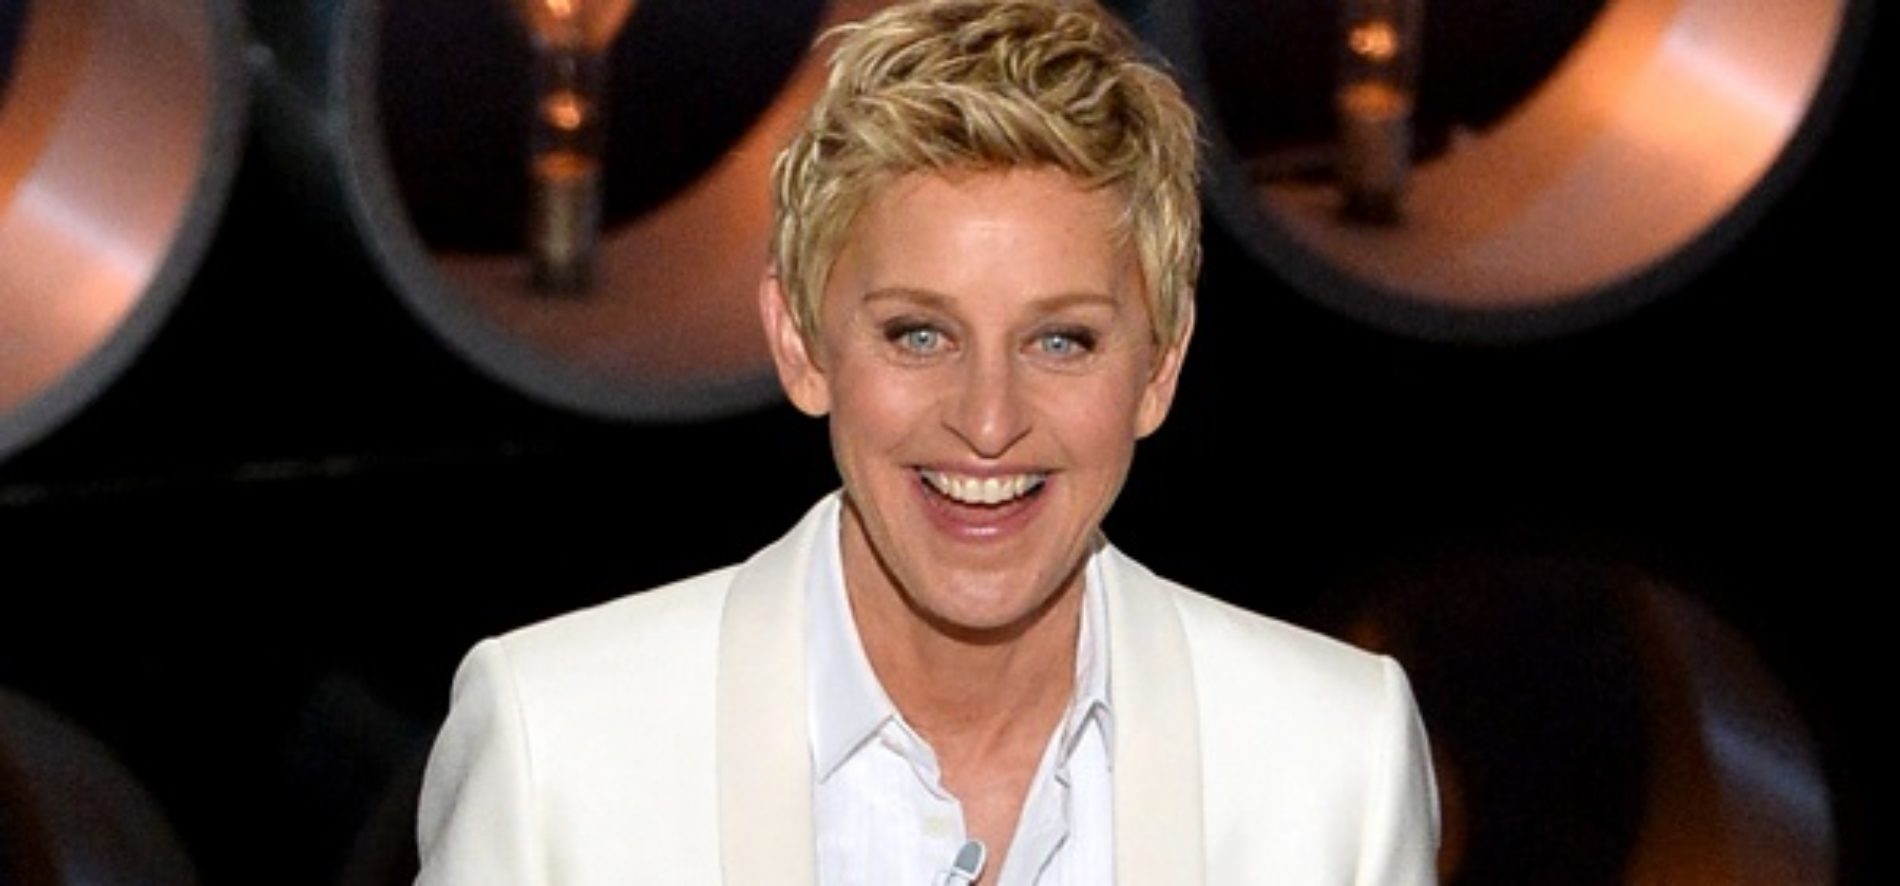 Ellen DeGeneres Responds to ‘Gay Agenda’ Accusations With Humor